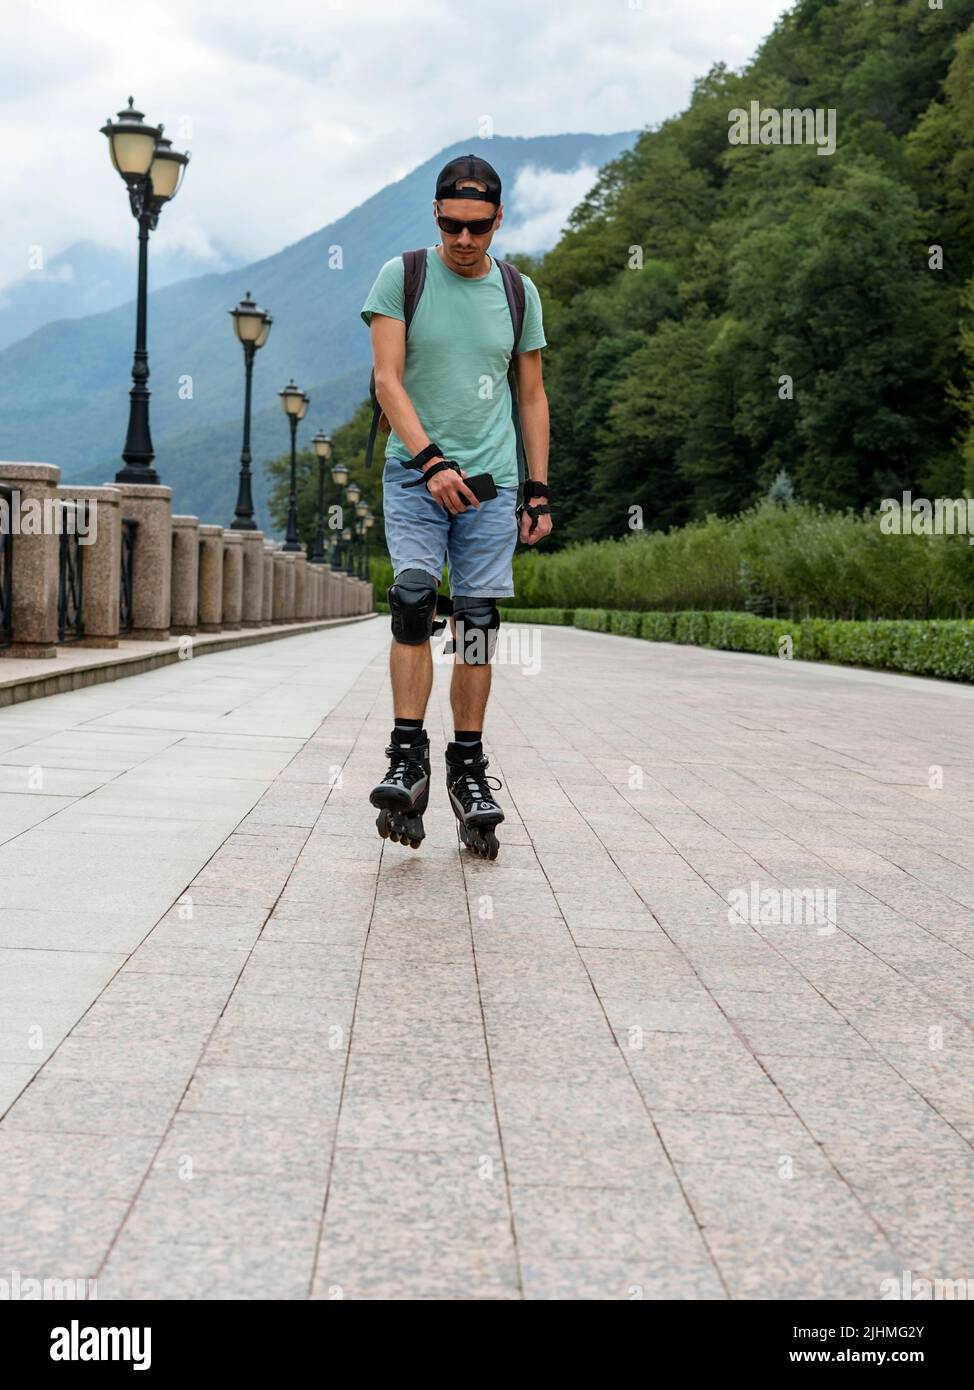 jeune homme en vêtements bleus en équipement de protection, sur des patins à roulettes le long d'un remblai sur fond de forêt et de montagnes en été Banque D'Images